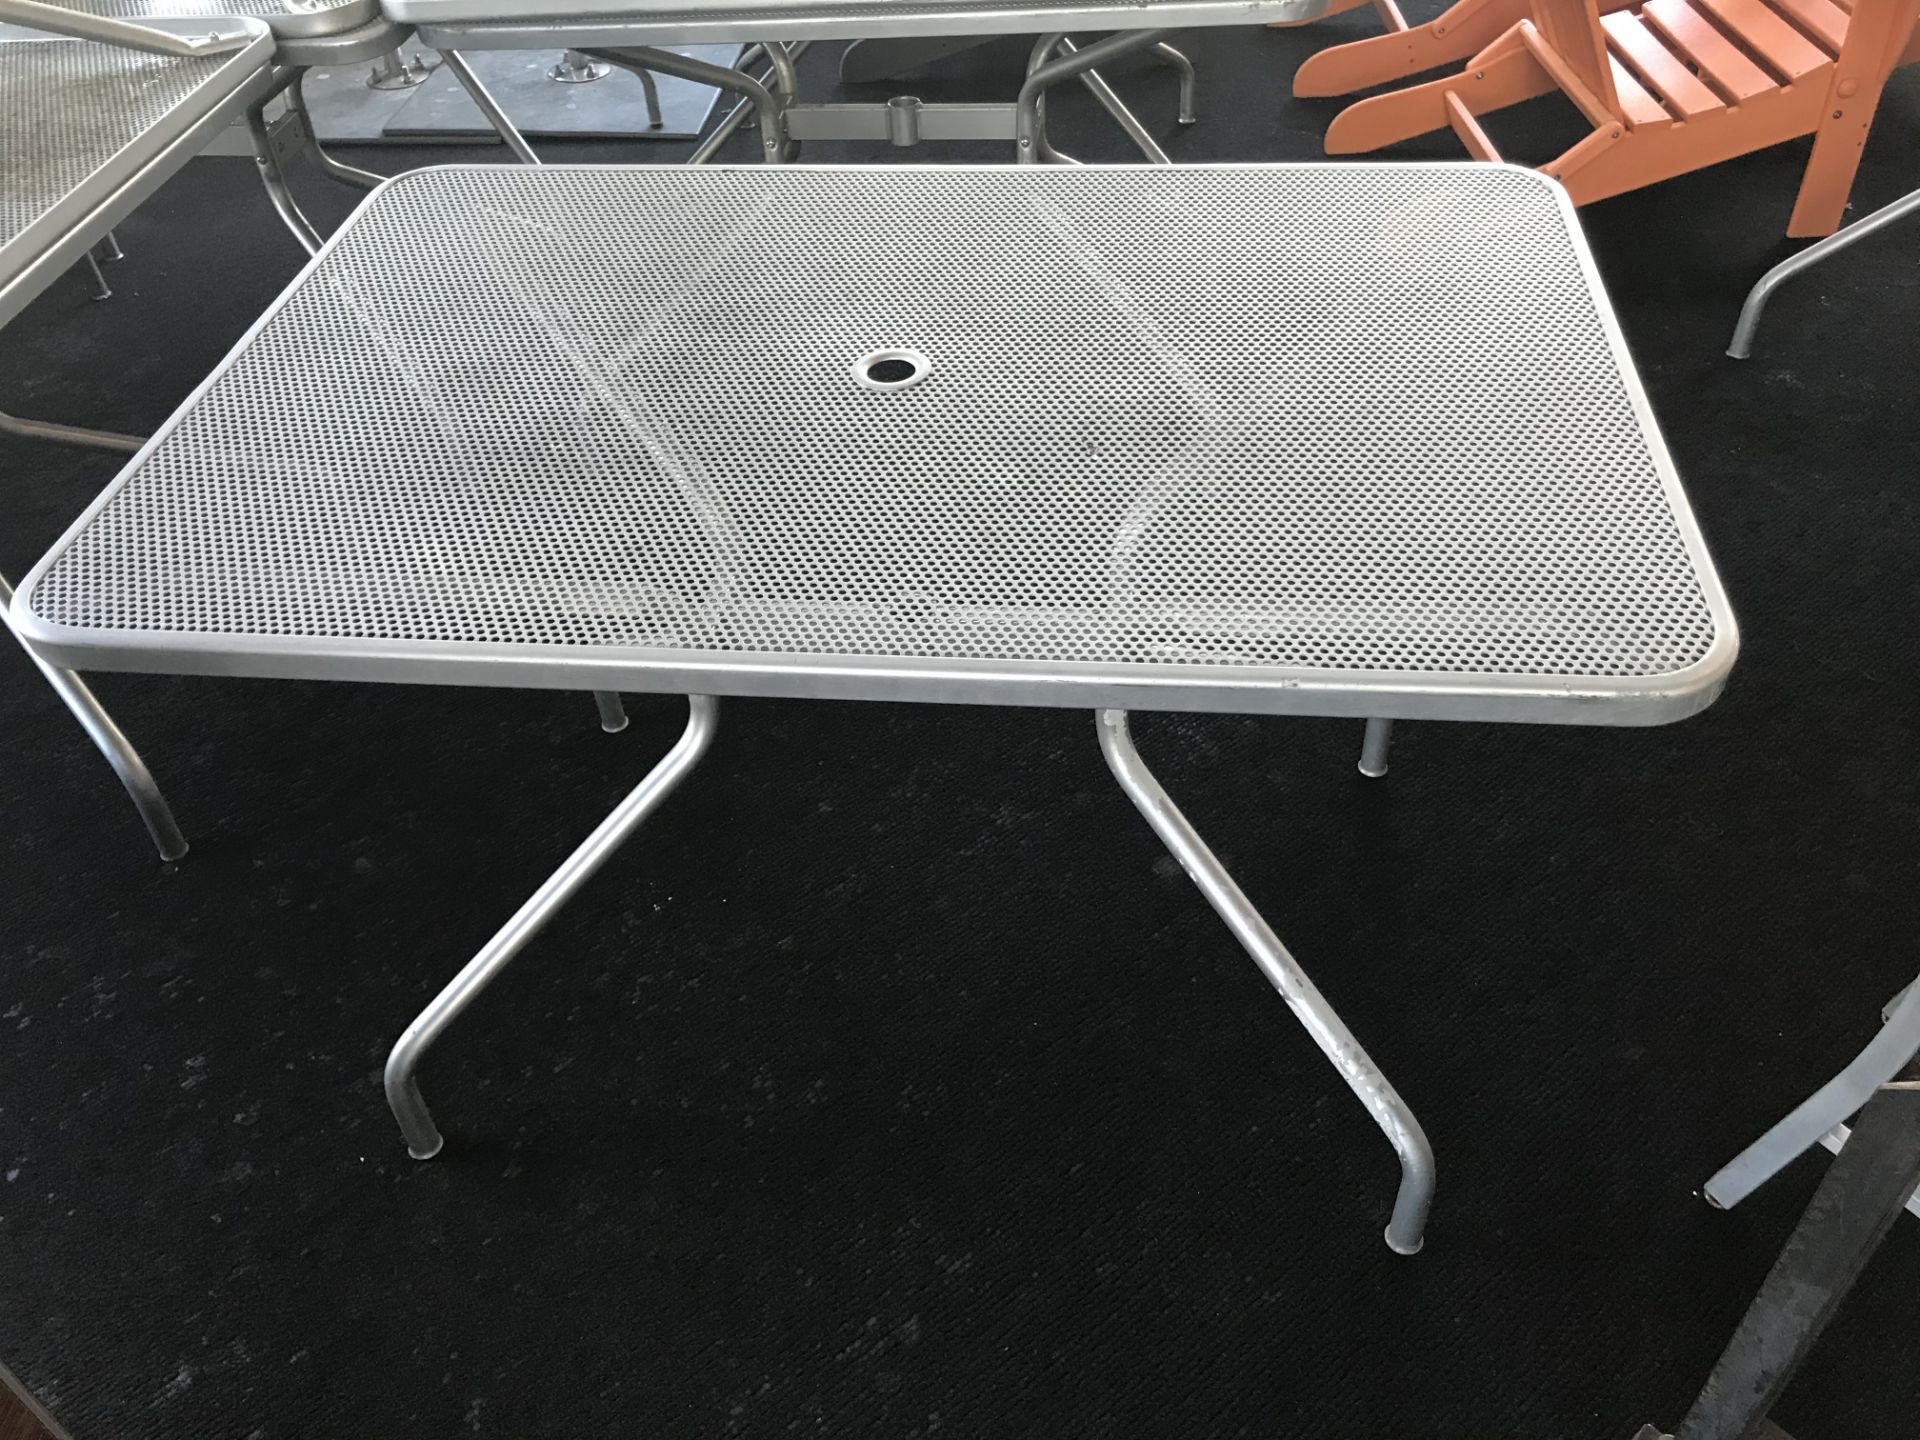 (6) 48" x 32" Steel Mesh Outdoor Patio Tables